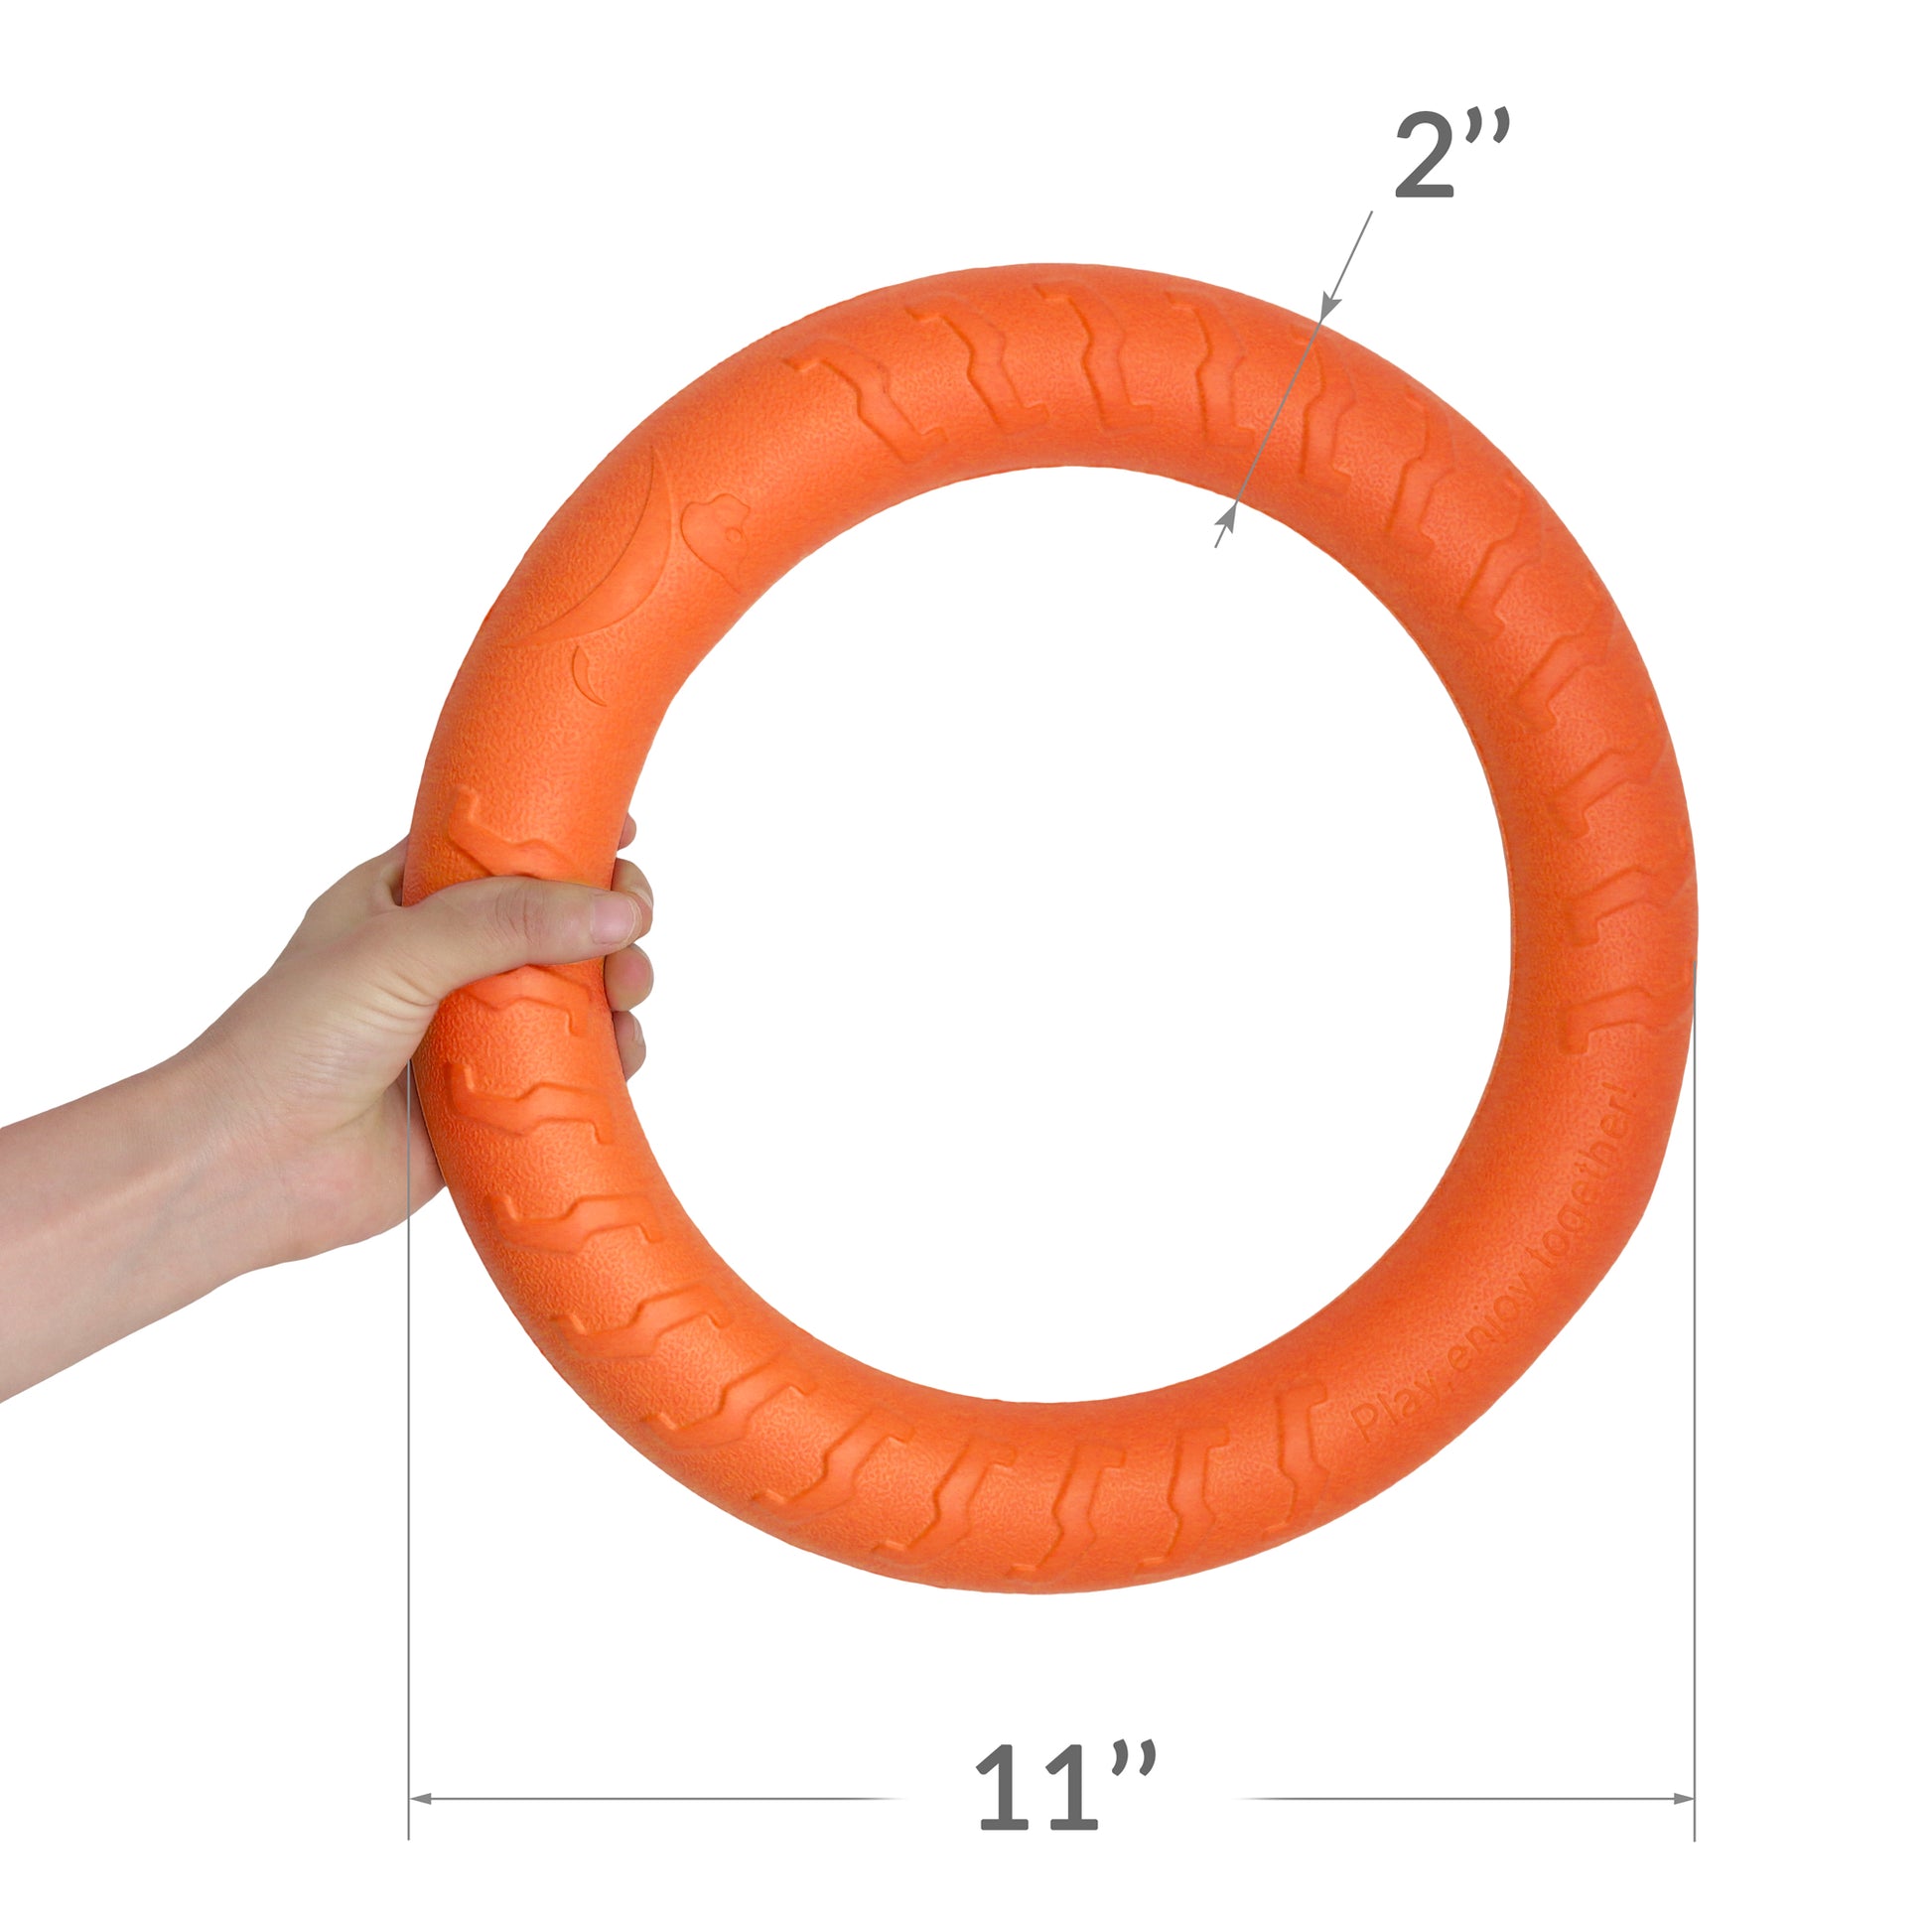 training orange ring size 2"-11"